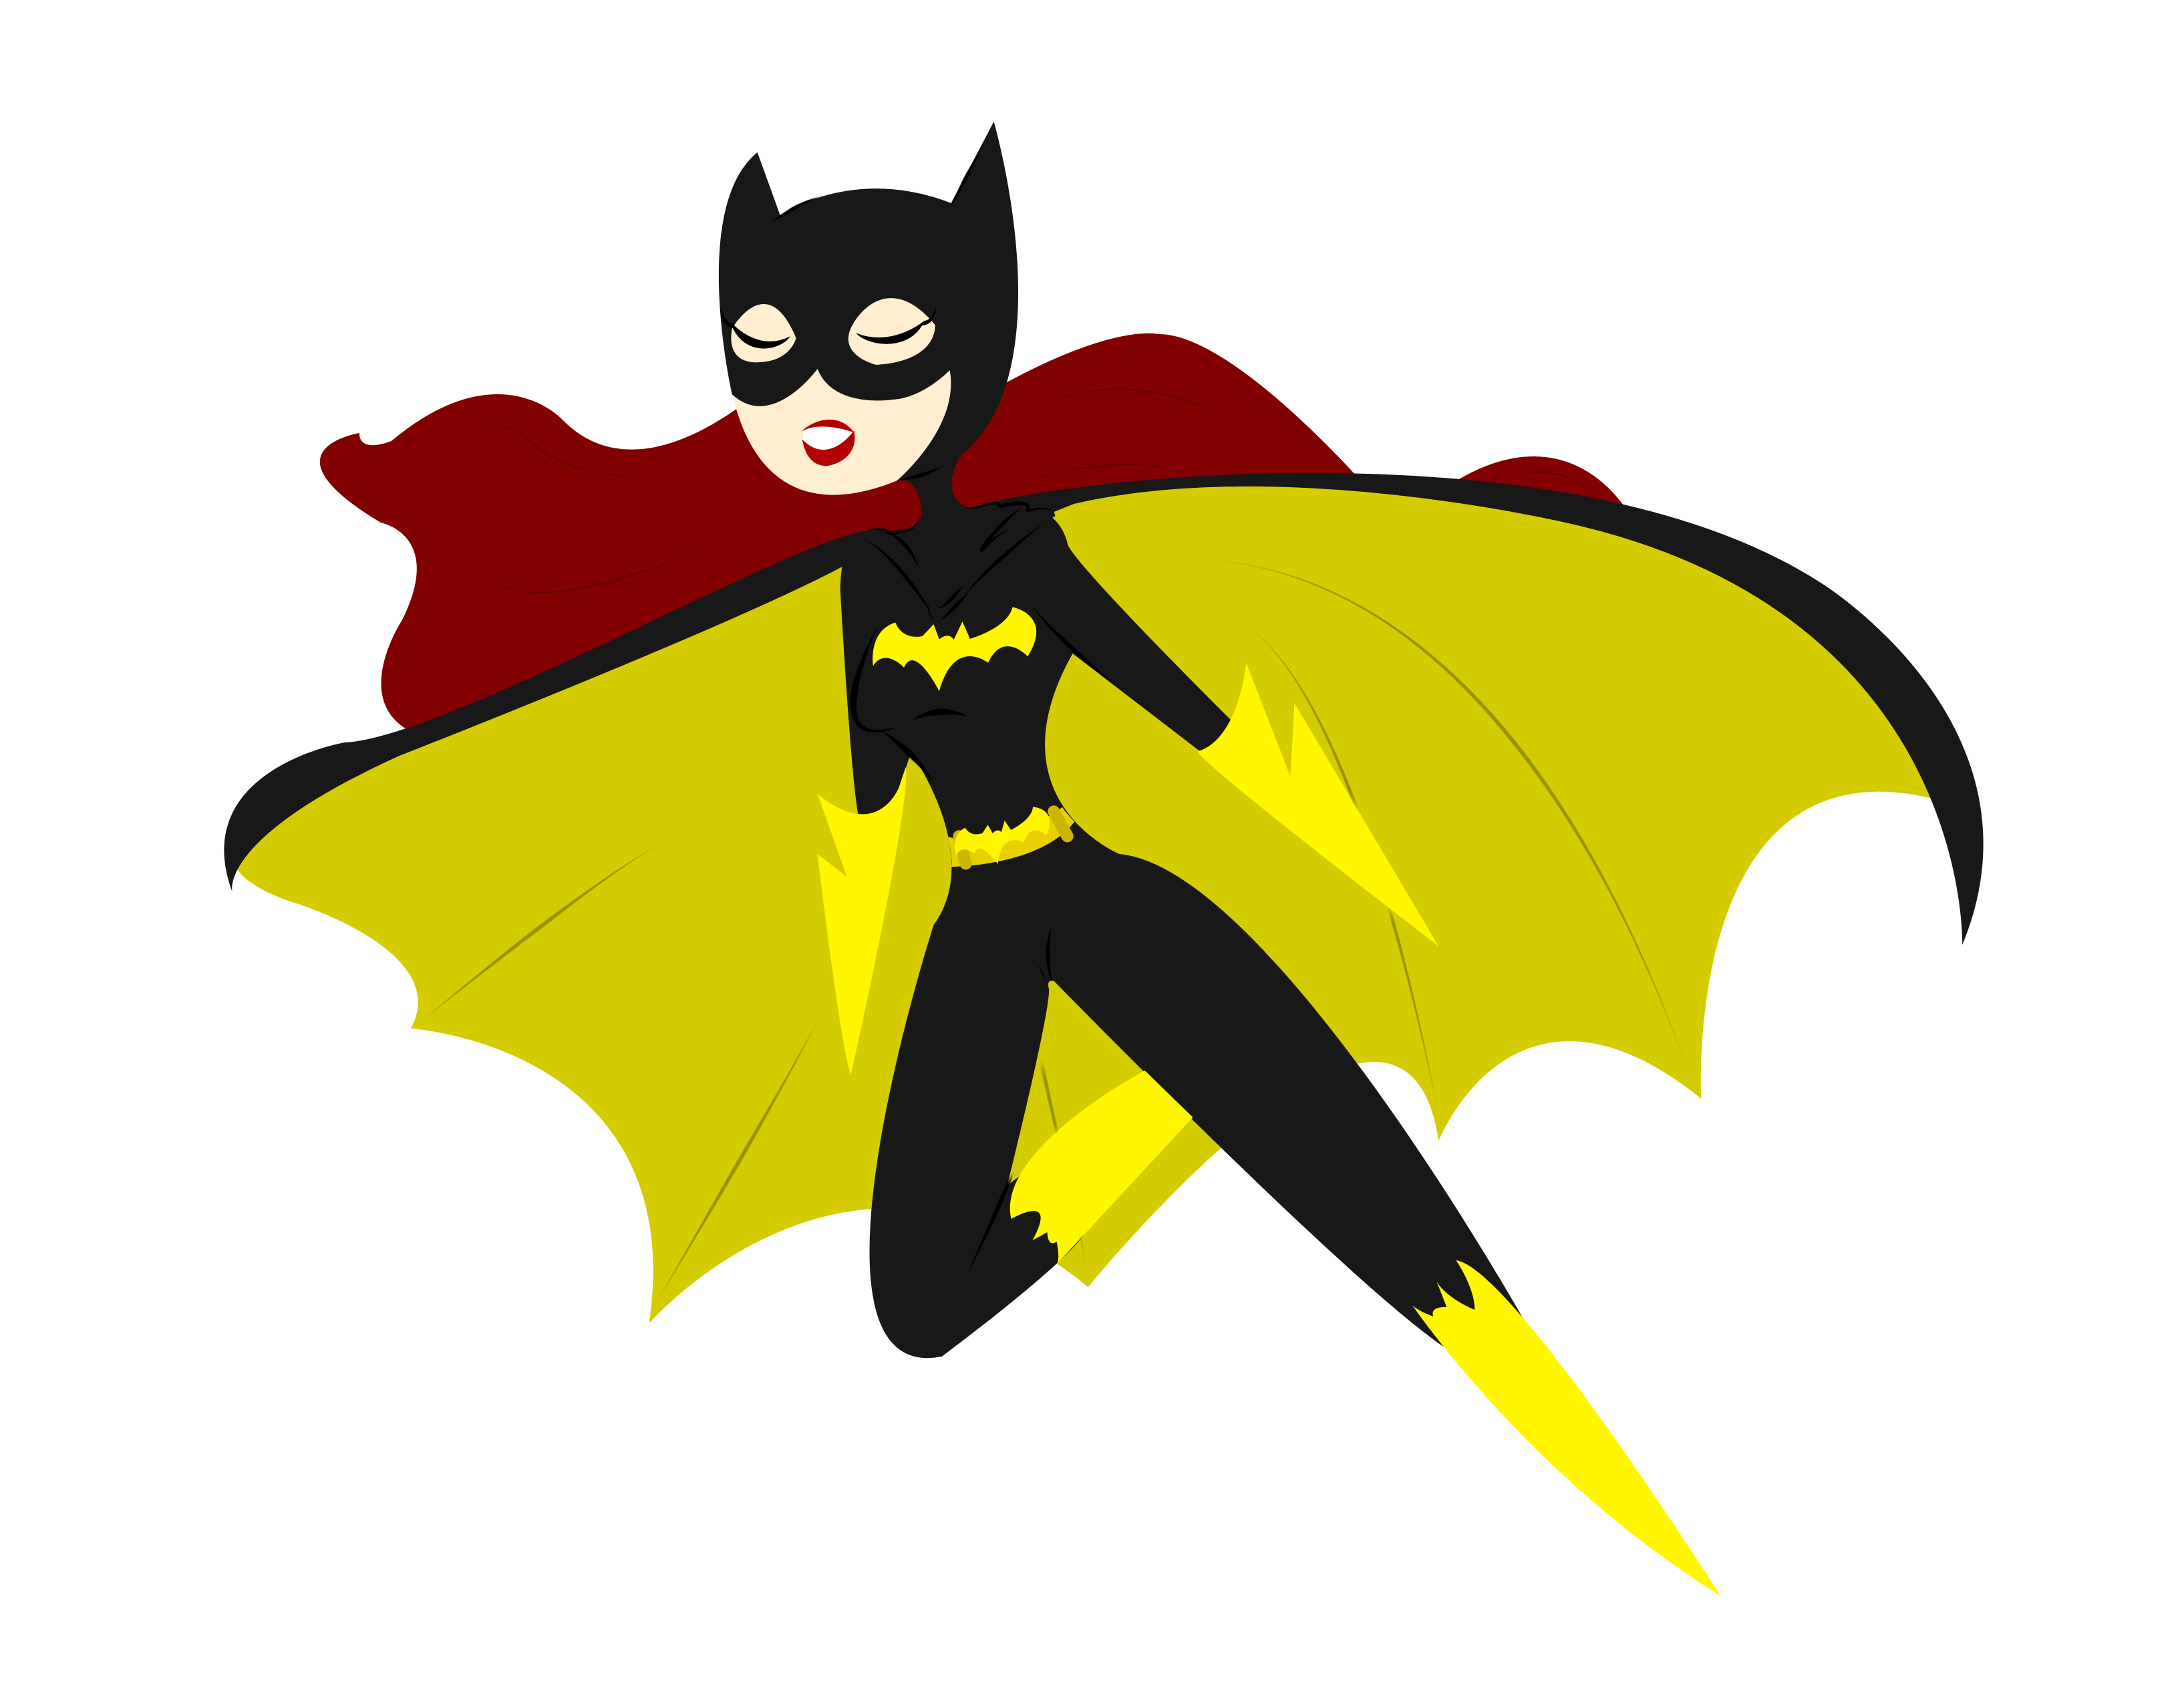 Young Justice Batgirl.png